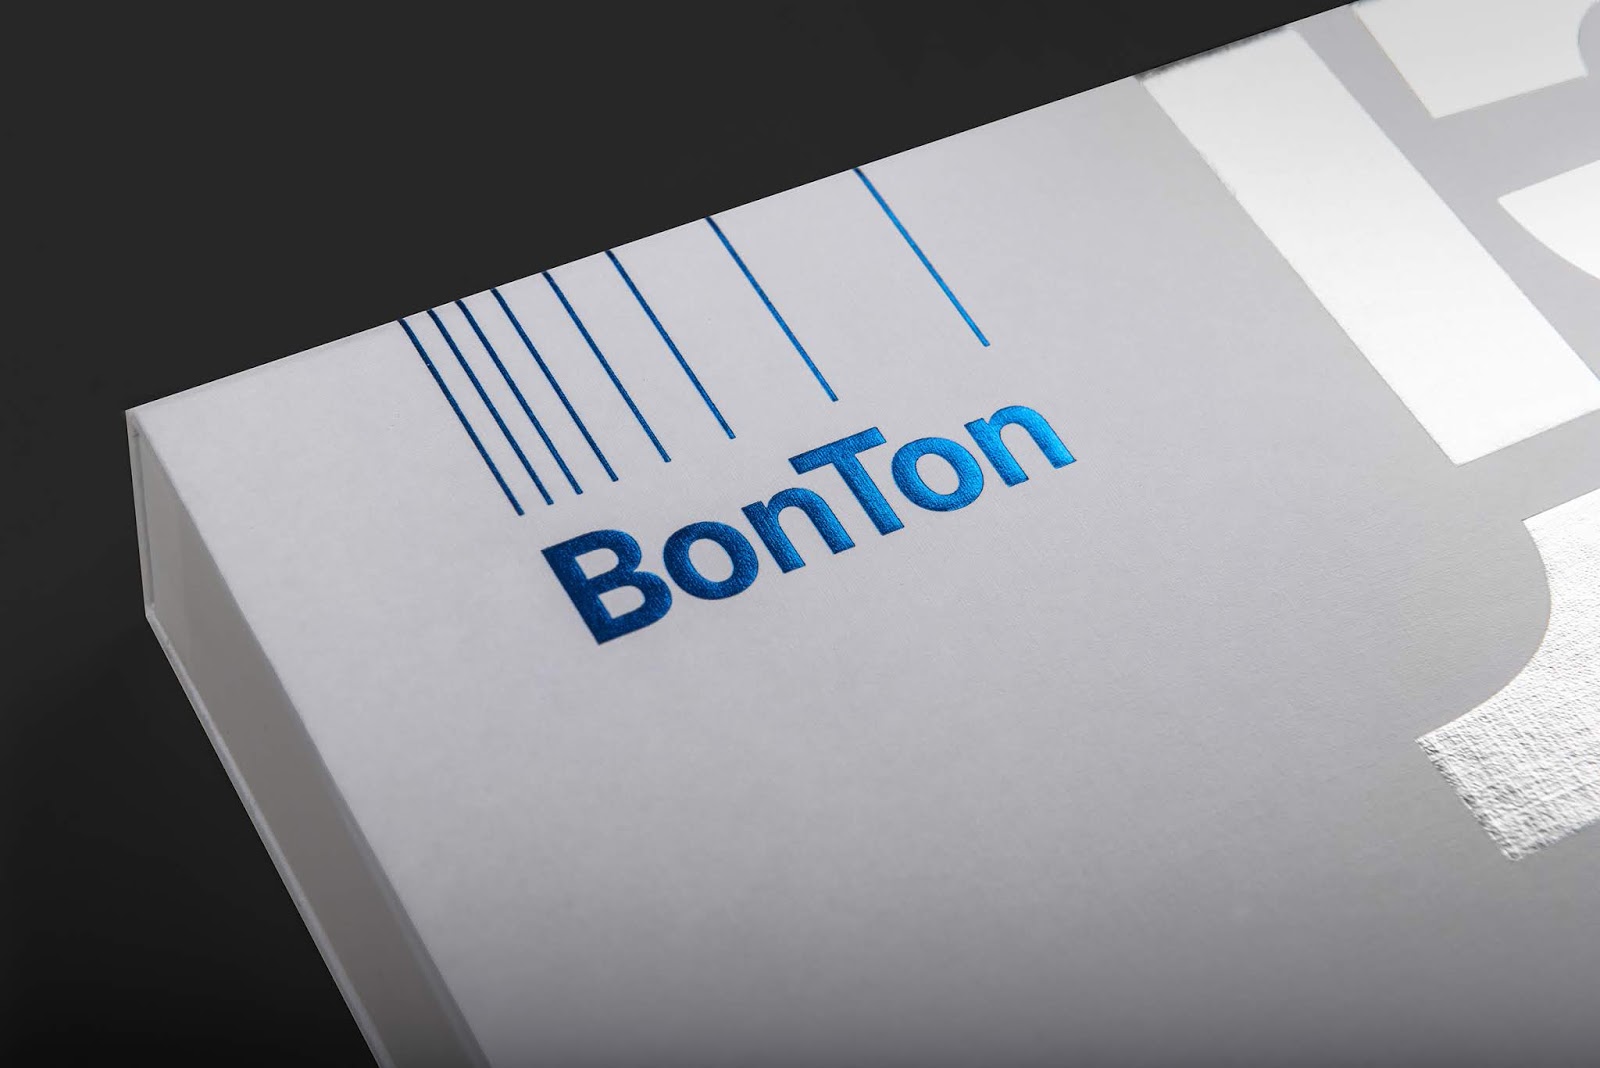 建筑工作室BonTon 15周年纪念礼盒设计